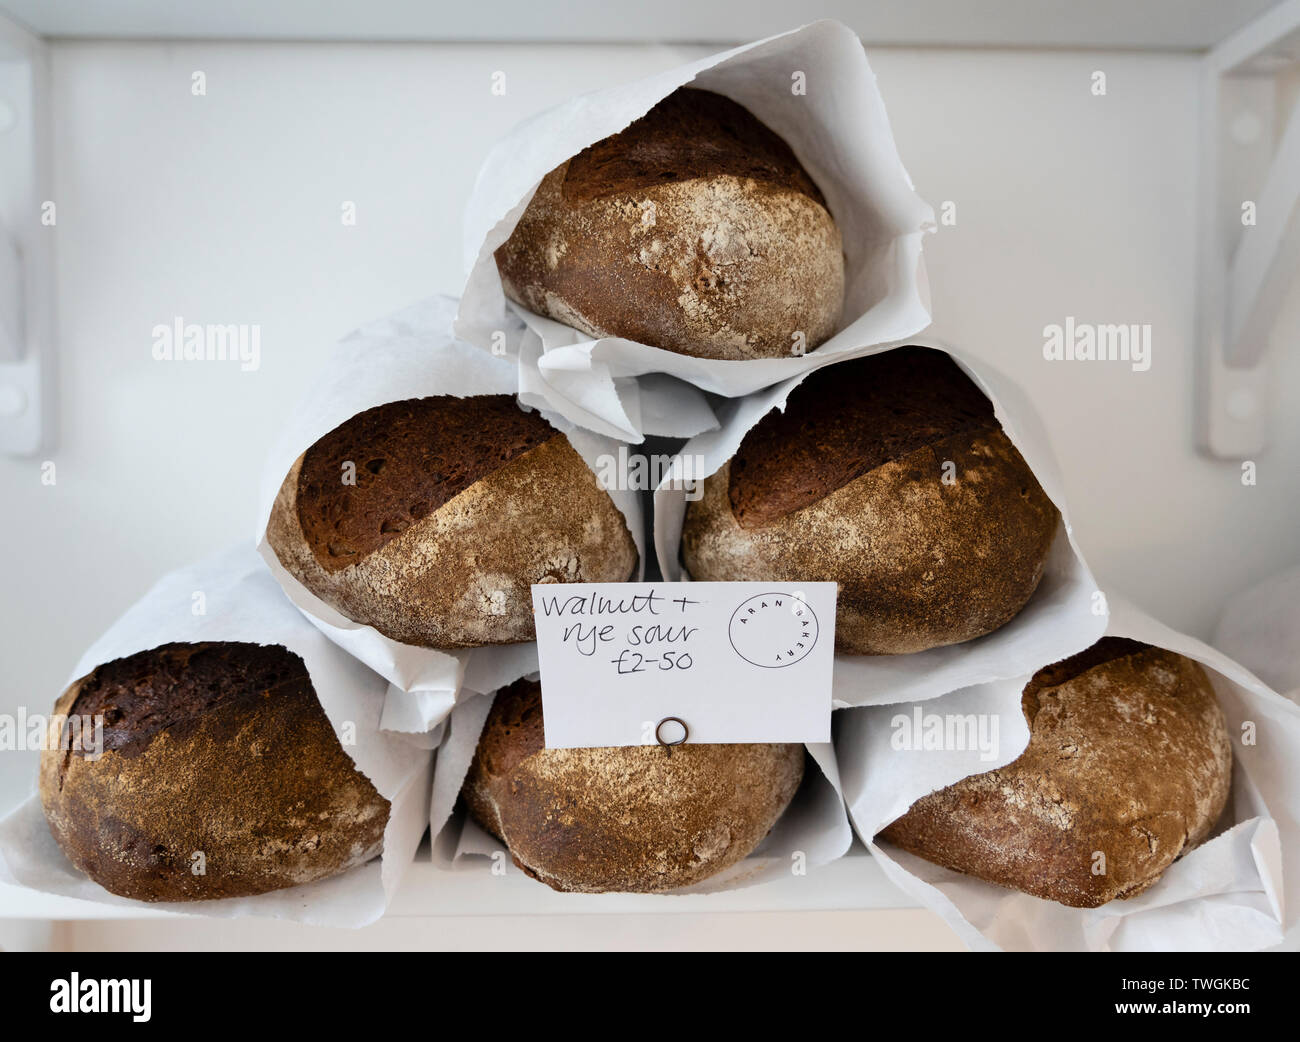 Detalle de hogazas de pan artesano en un estante de la tienda Foto de stock